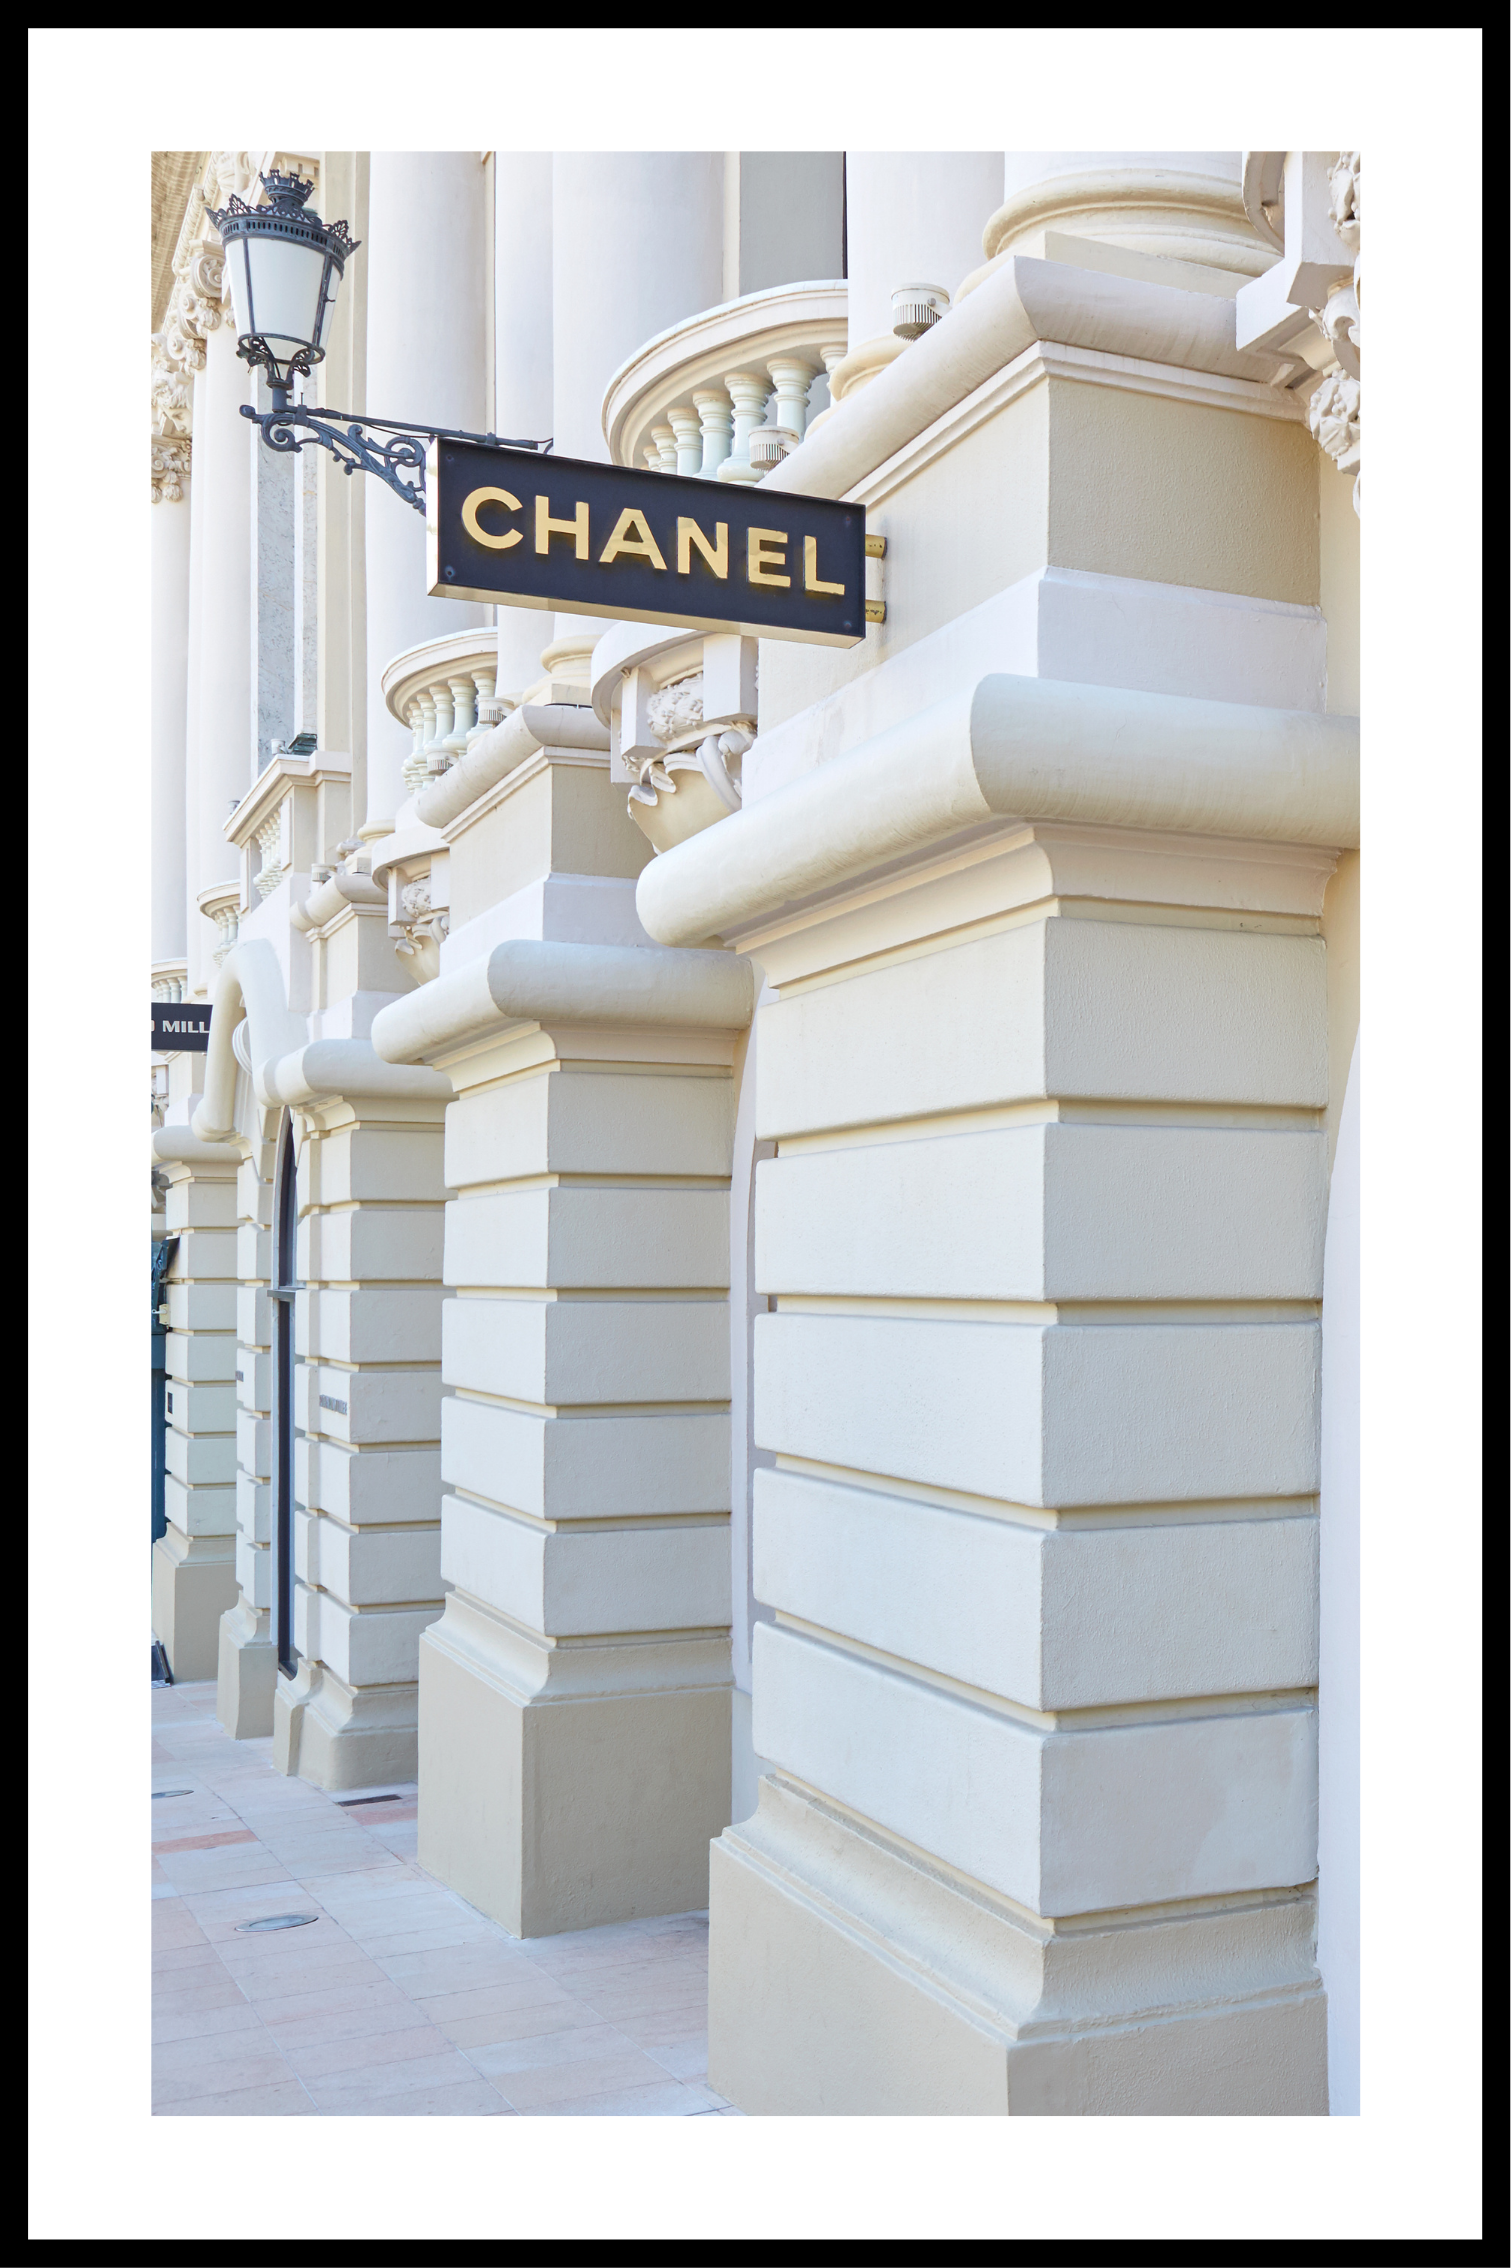 Chanel butik nr. 2 affischer